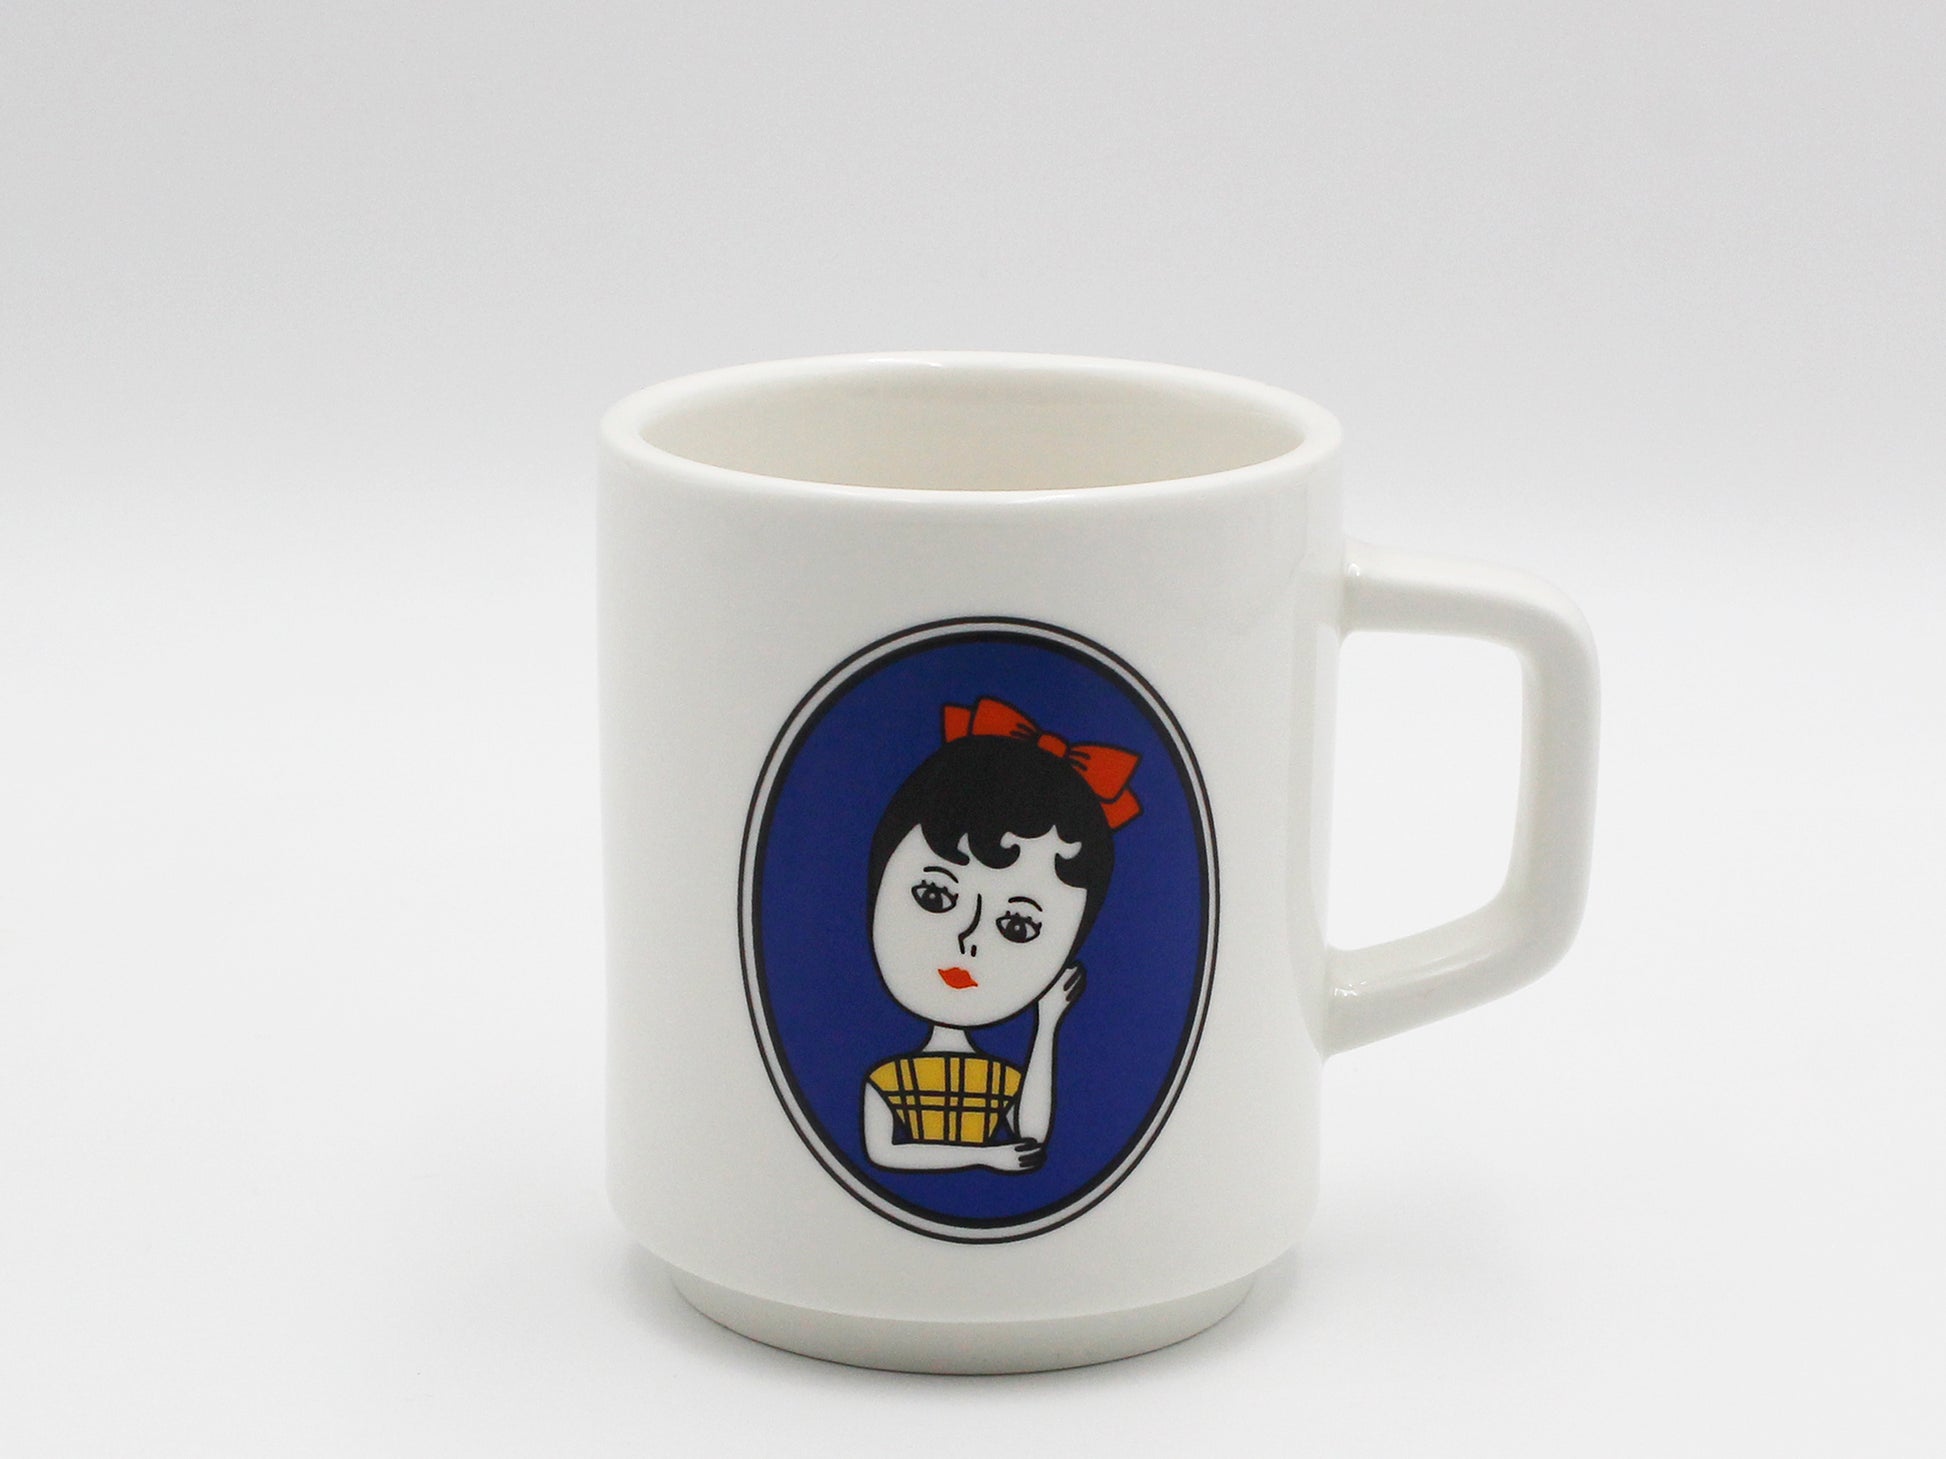 Vintage Mug Cup - Luckyplanetusa